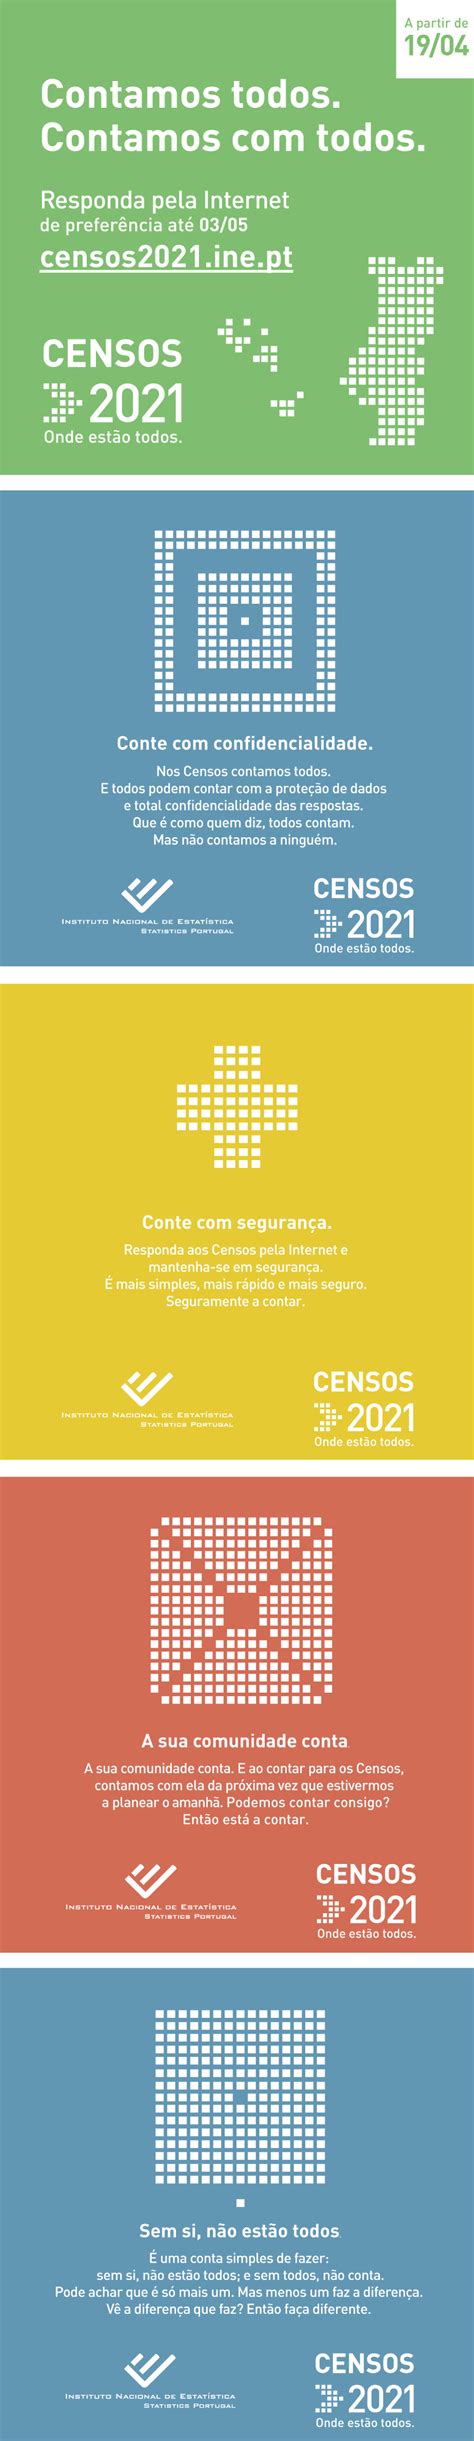 Sitio web sobre los censos 2021. Contamos todos - Graciosa Online - RTP Açores - RTP